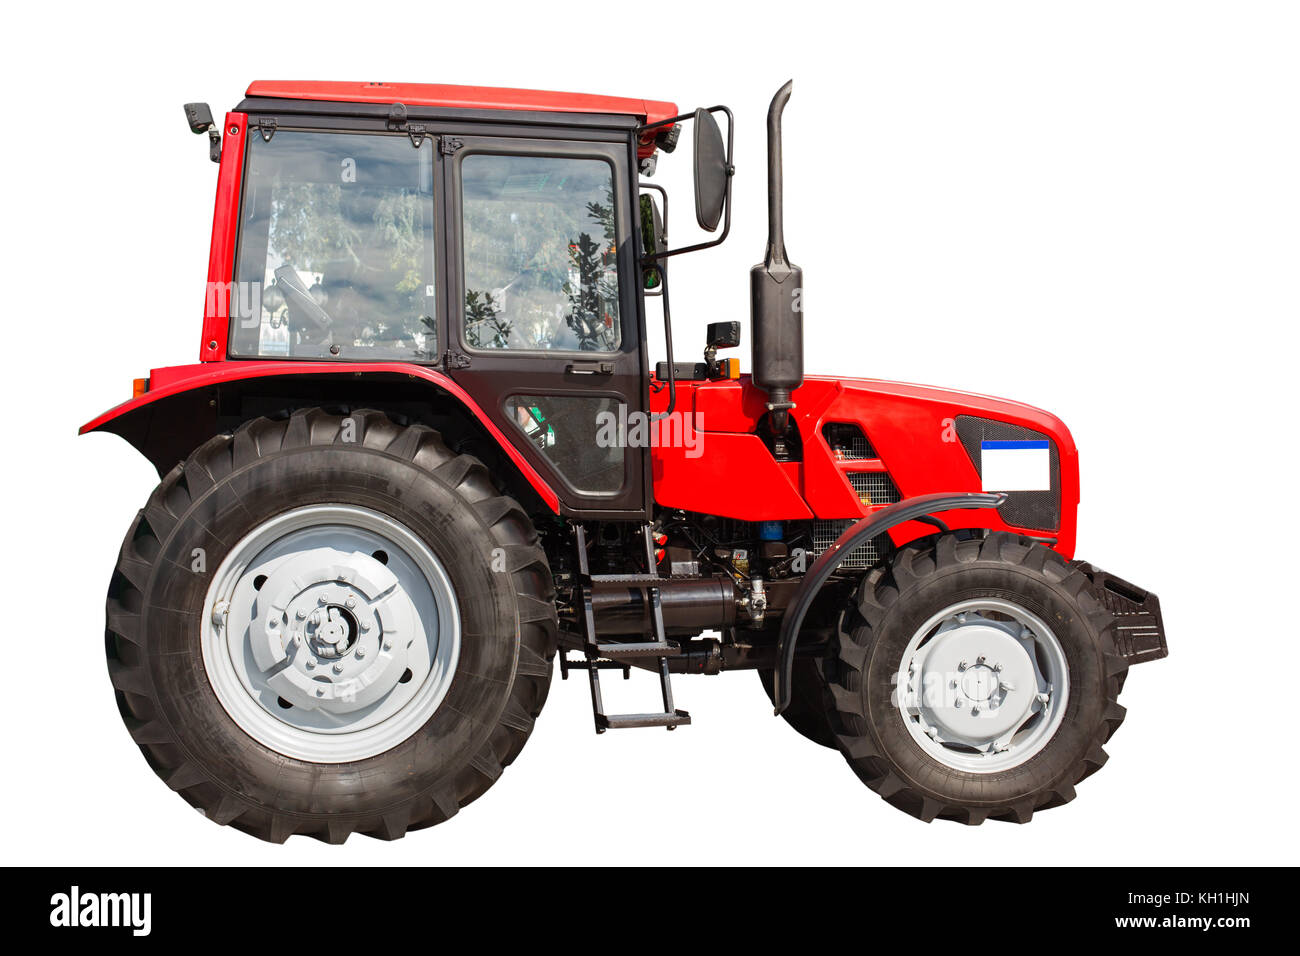 Nuova red trattore agricolo isolato su sfondo bianco con tracciato di ritaglio Foto Stock